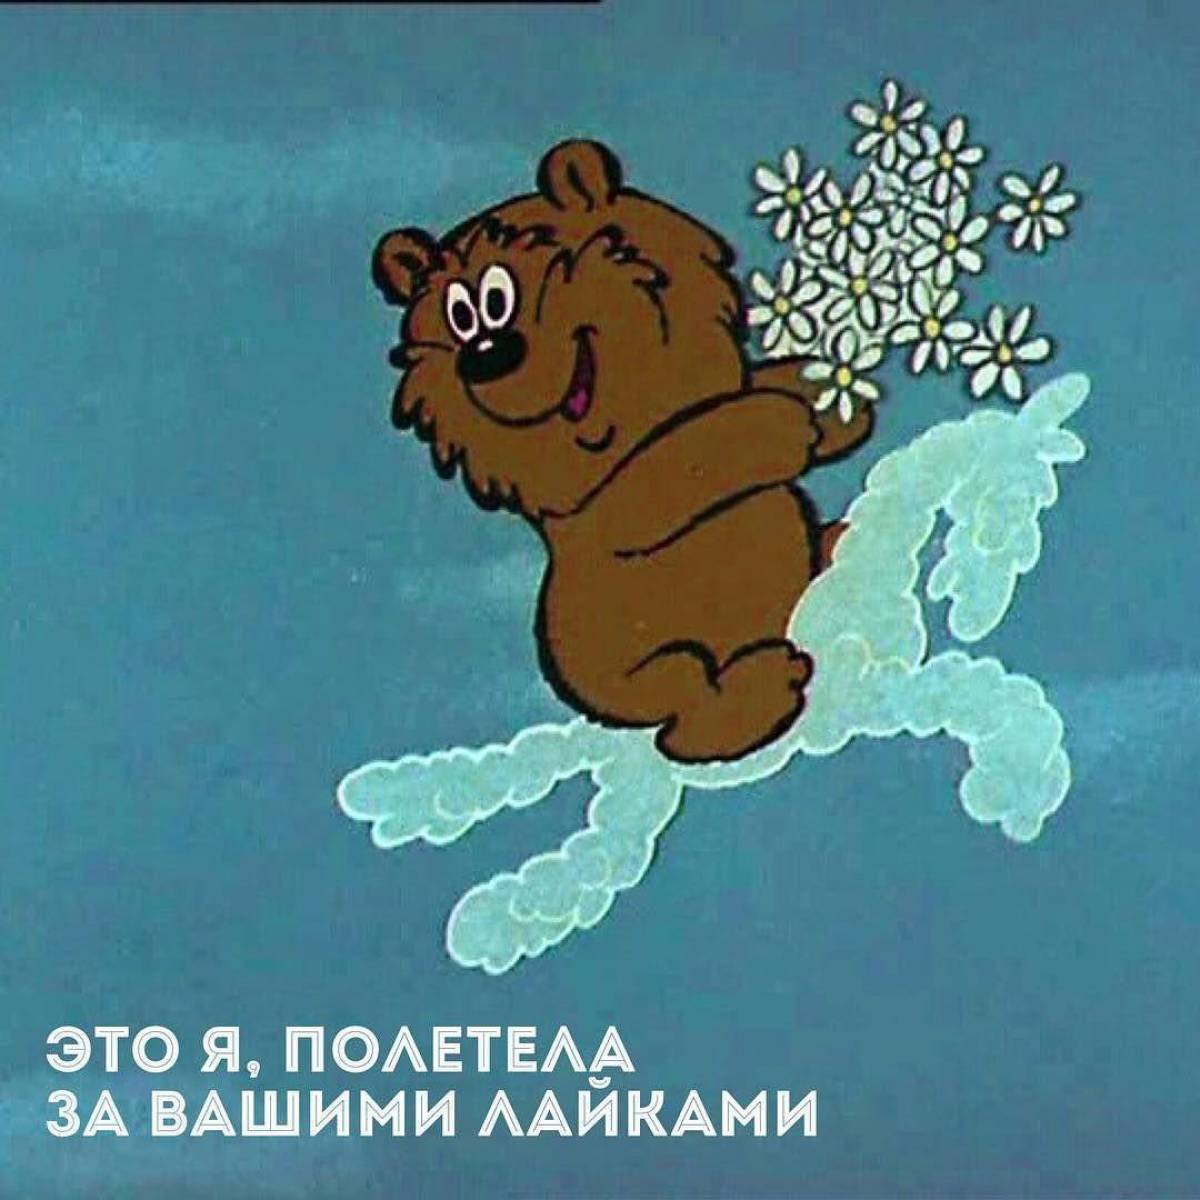 Облака трям. Трям Здравствуйте 1980 медведь. Медведь из мультфильма Трям Здравствуйте.